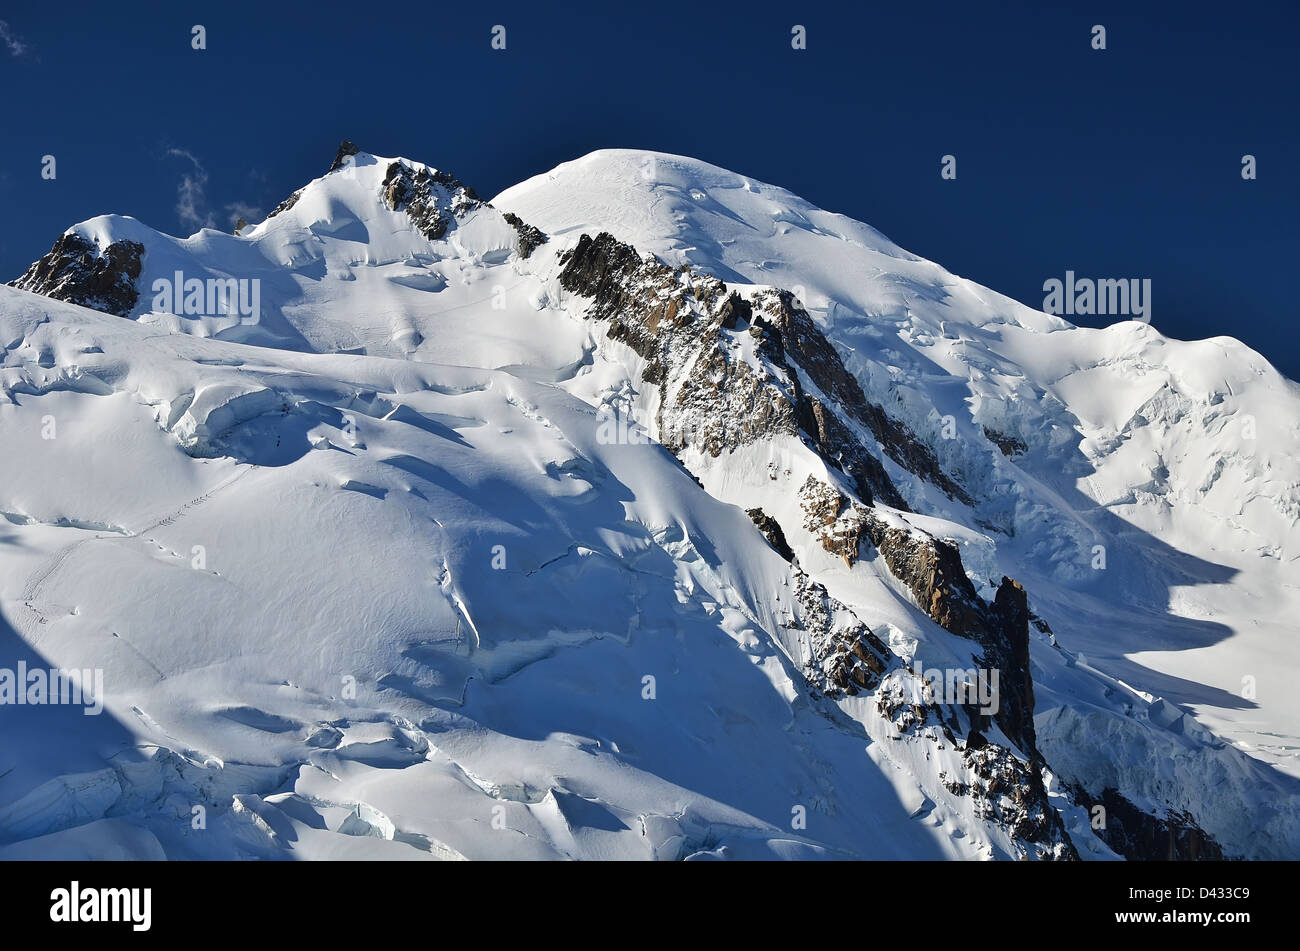 Mont Blanc è la montagna più alta del centro storico di Europa (4810 m di altitudine). Immagine è prendere dalla Aguille du Midi, Chamonix in Francia. Foto Stock